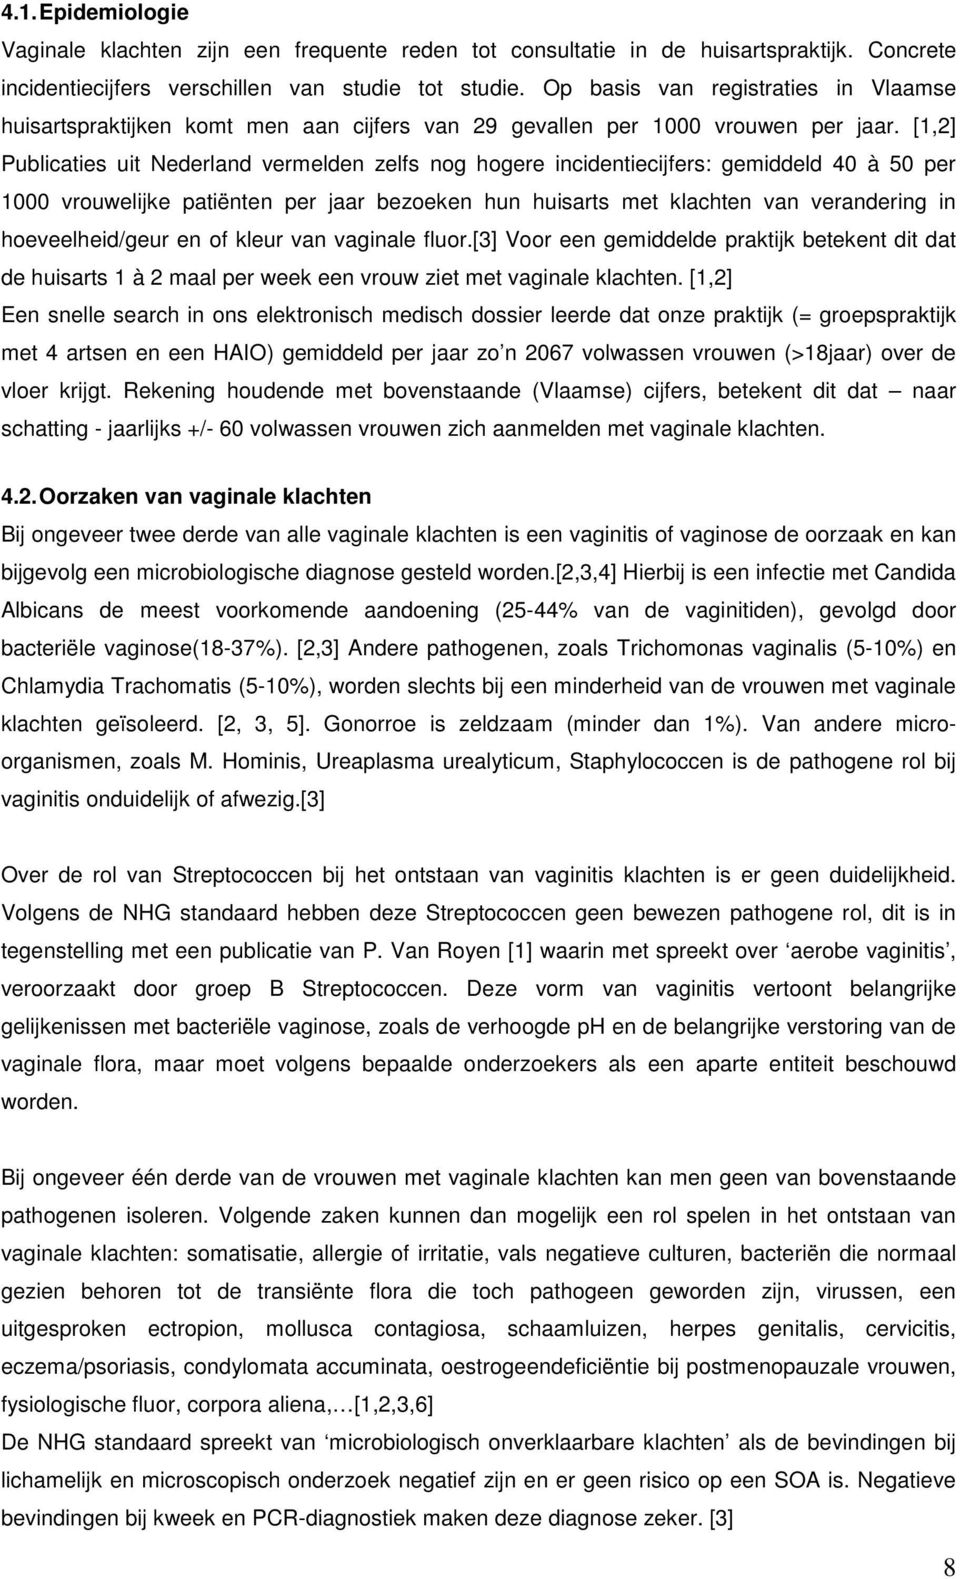 [1,2] Publicaties uit Nederland vermelden zelfs nog hogere incidentiecijfers: gemiddeld 40 à 50 per 1000 vrouwelijke patiënten per jaar bezoeken hun huisarts met klachten van verandering in